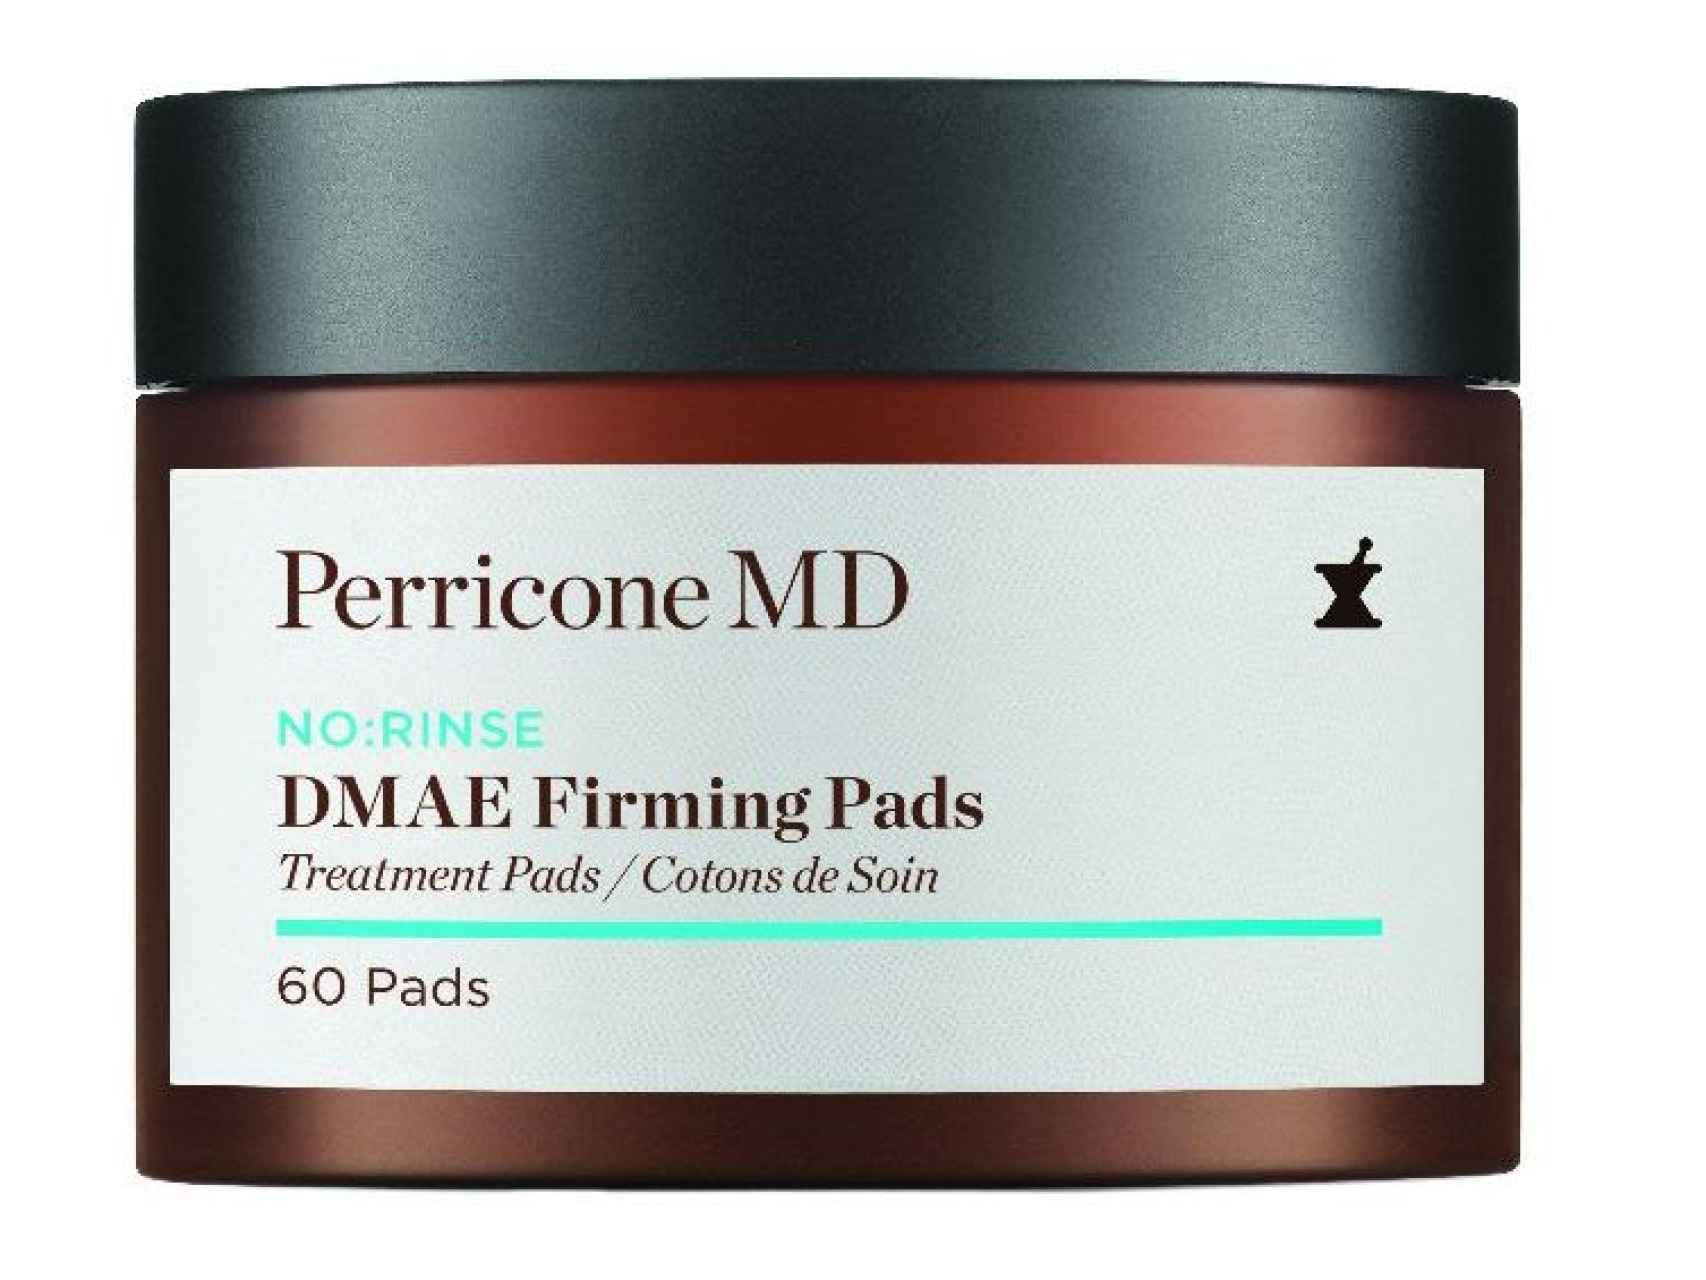 DMAE Firming Pads de Perricone MD Parches con DMAE con efectos reafirmantes 61 € perriconemd.es